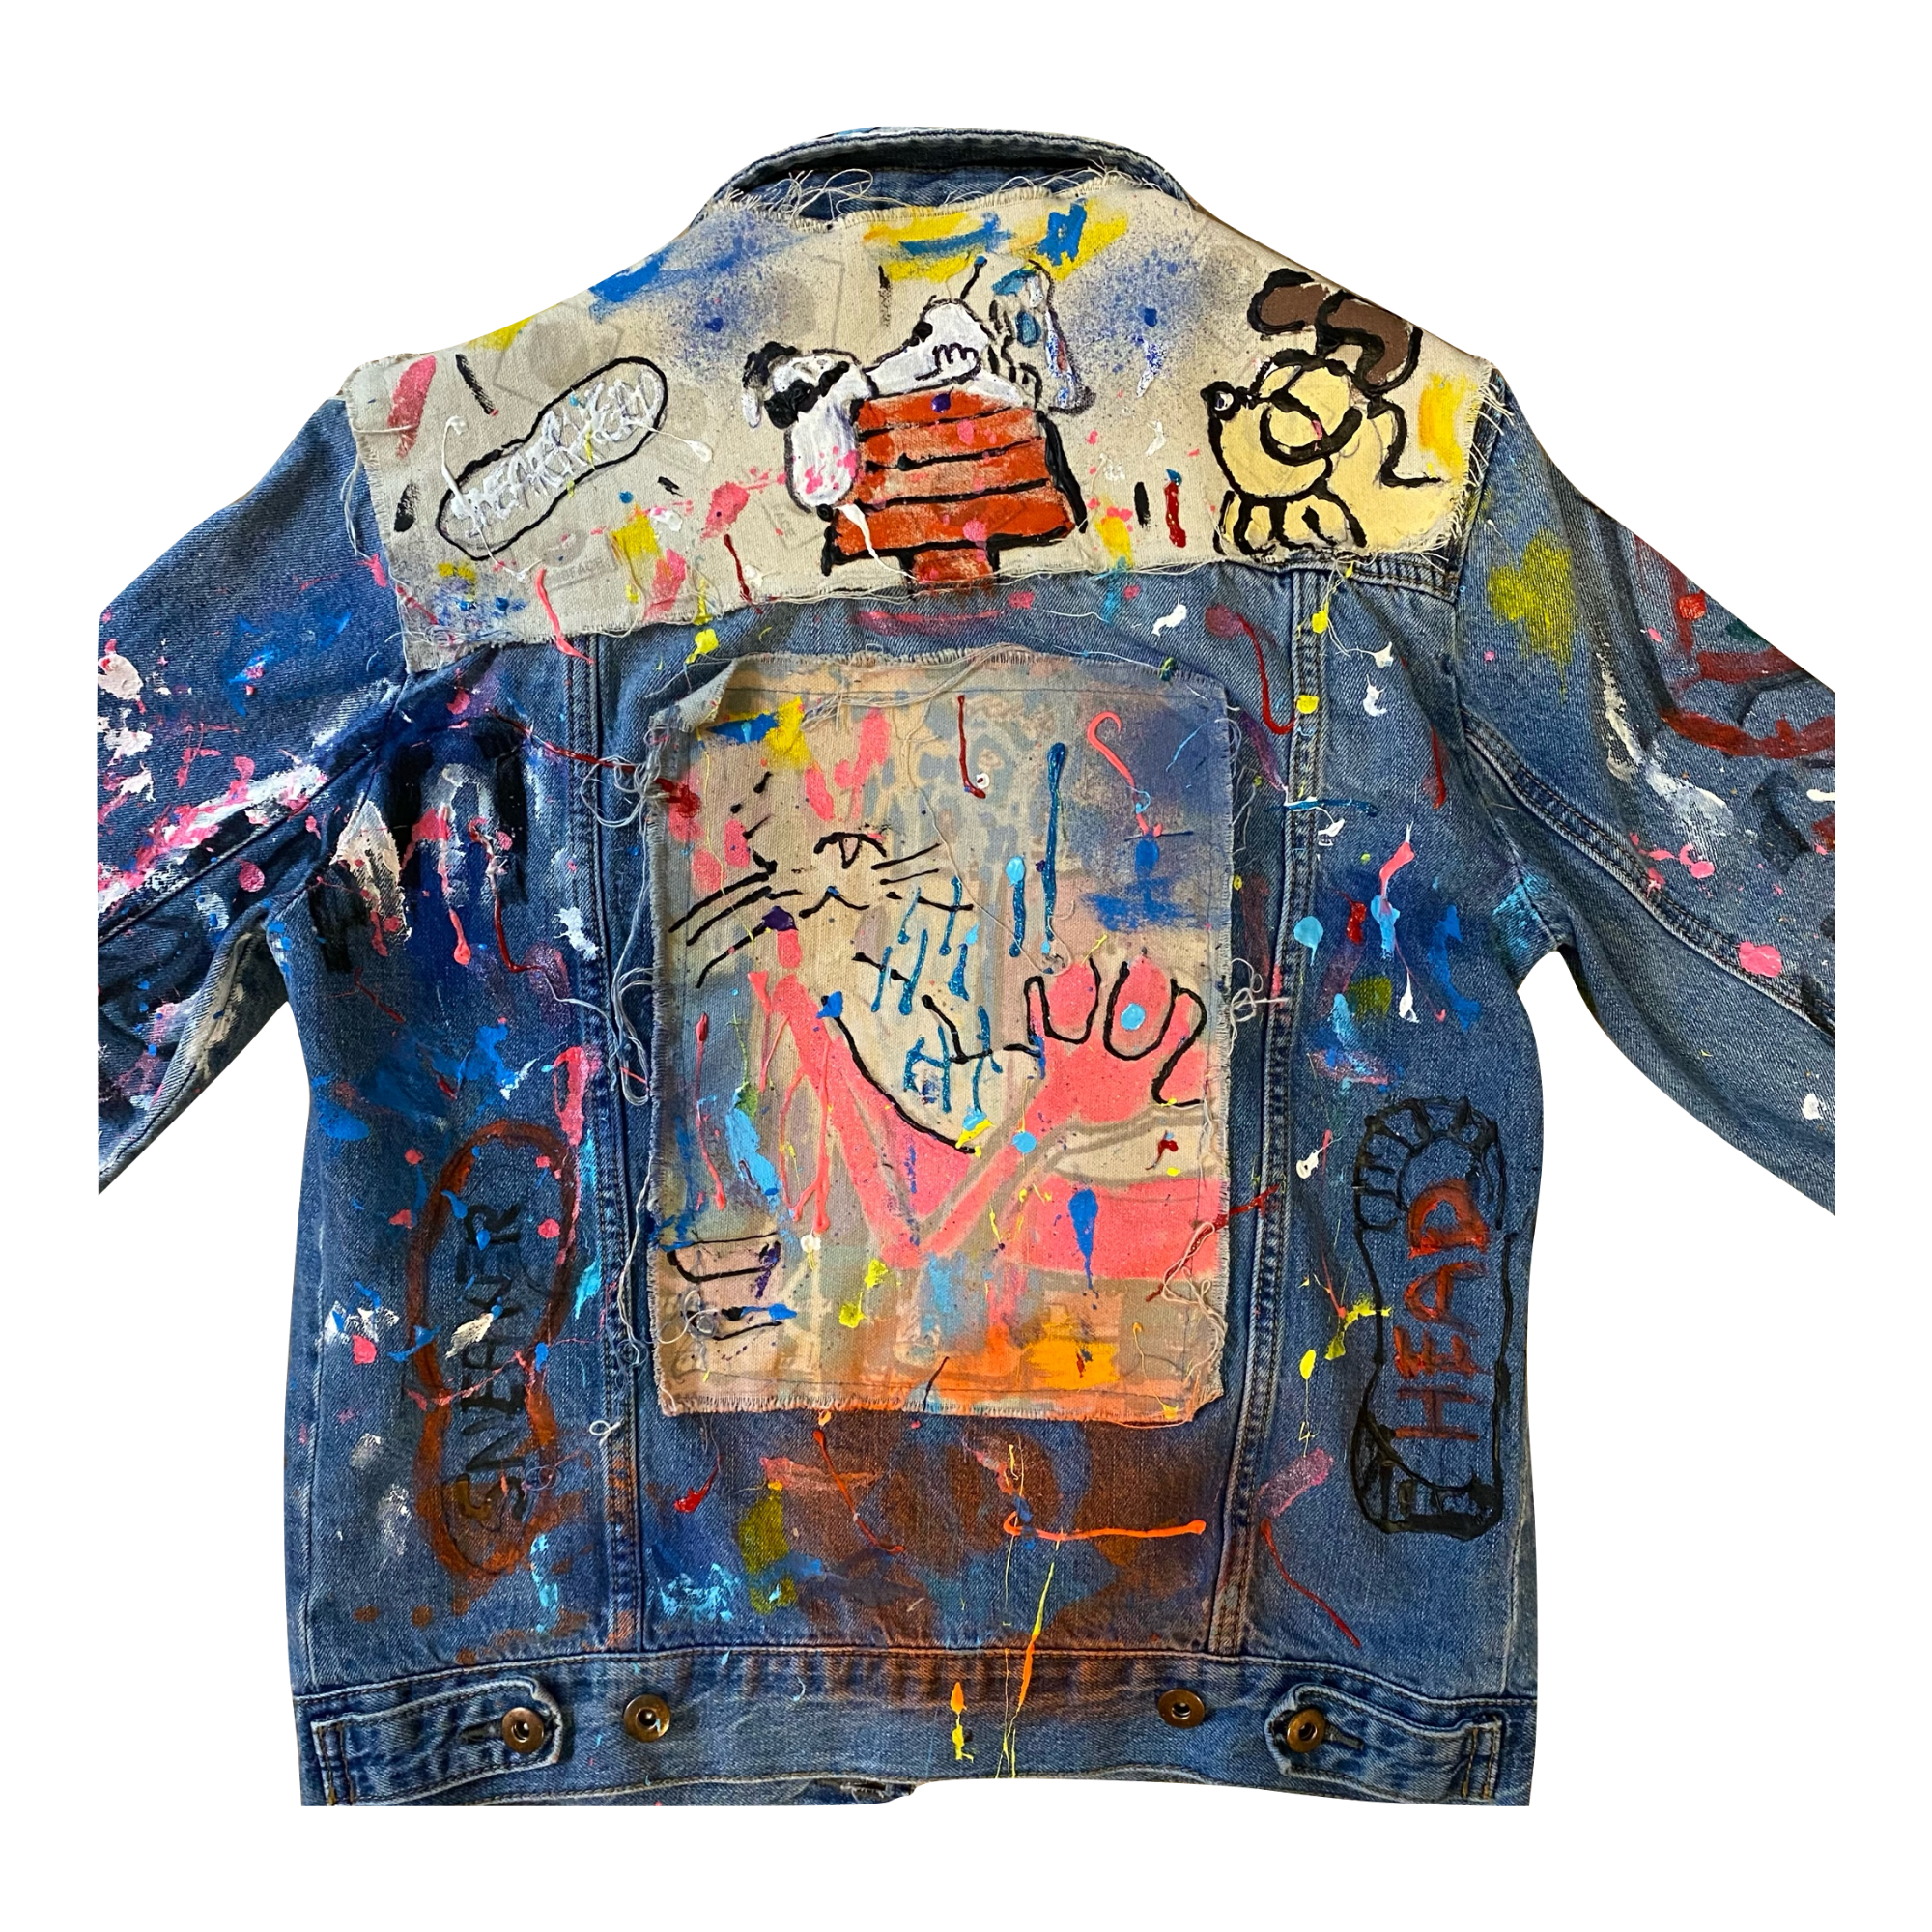 Custom Jacket, Painted jacket acrylic paint, blue jean jacket, custom style jean jacket, 